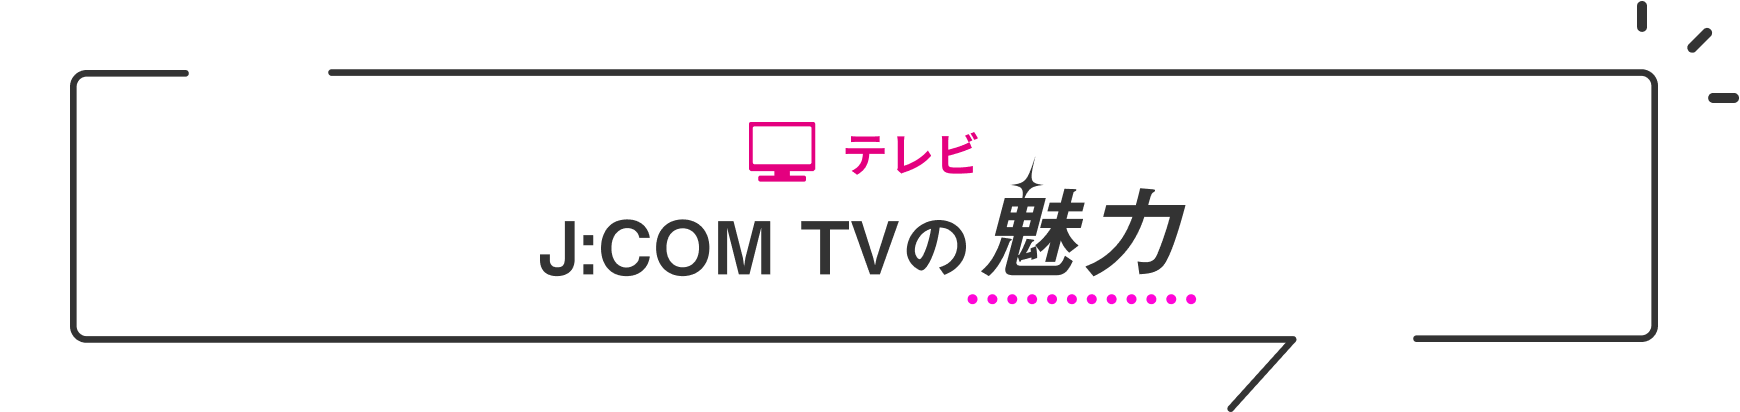 テレビ J:COM TVの魅力